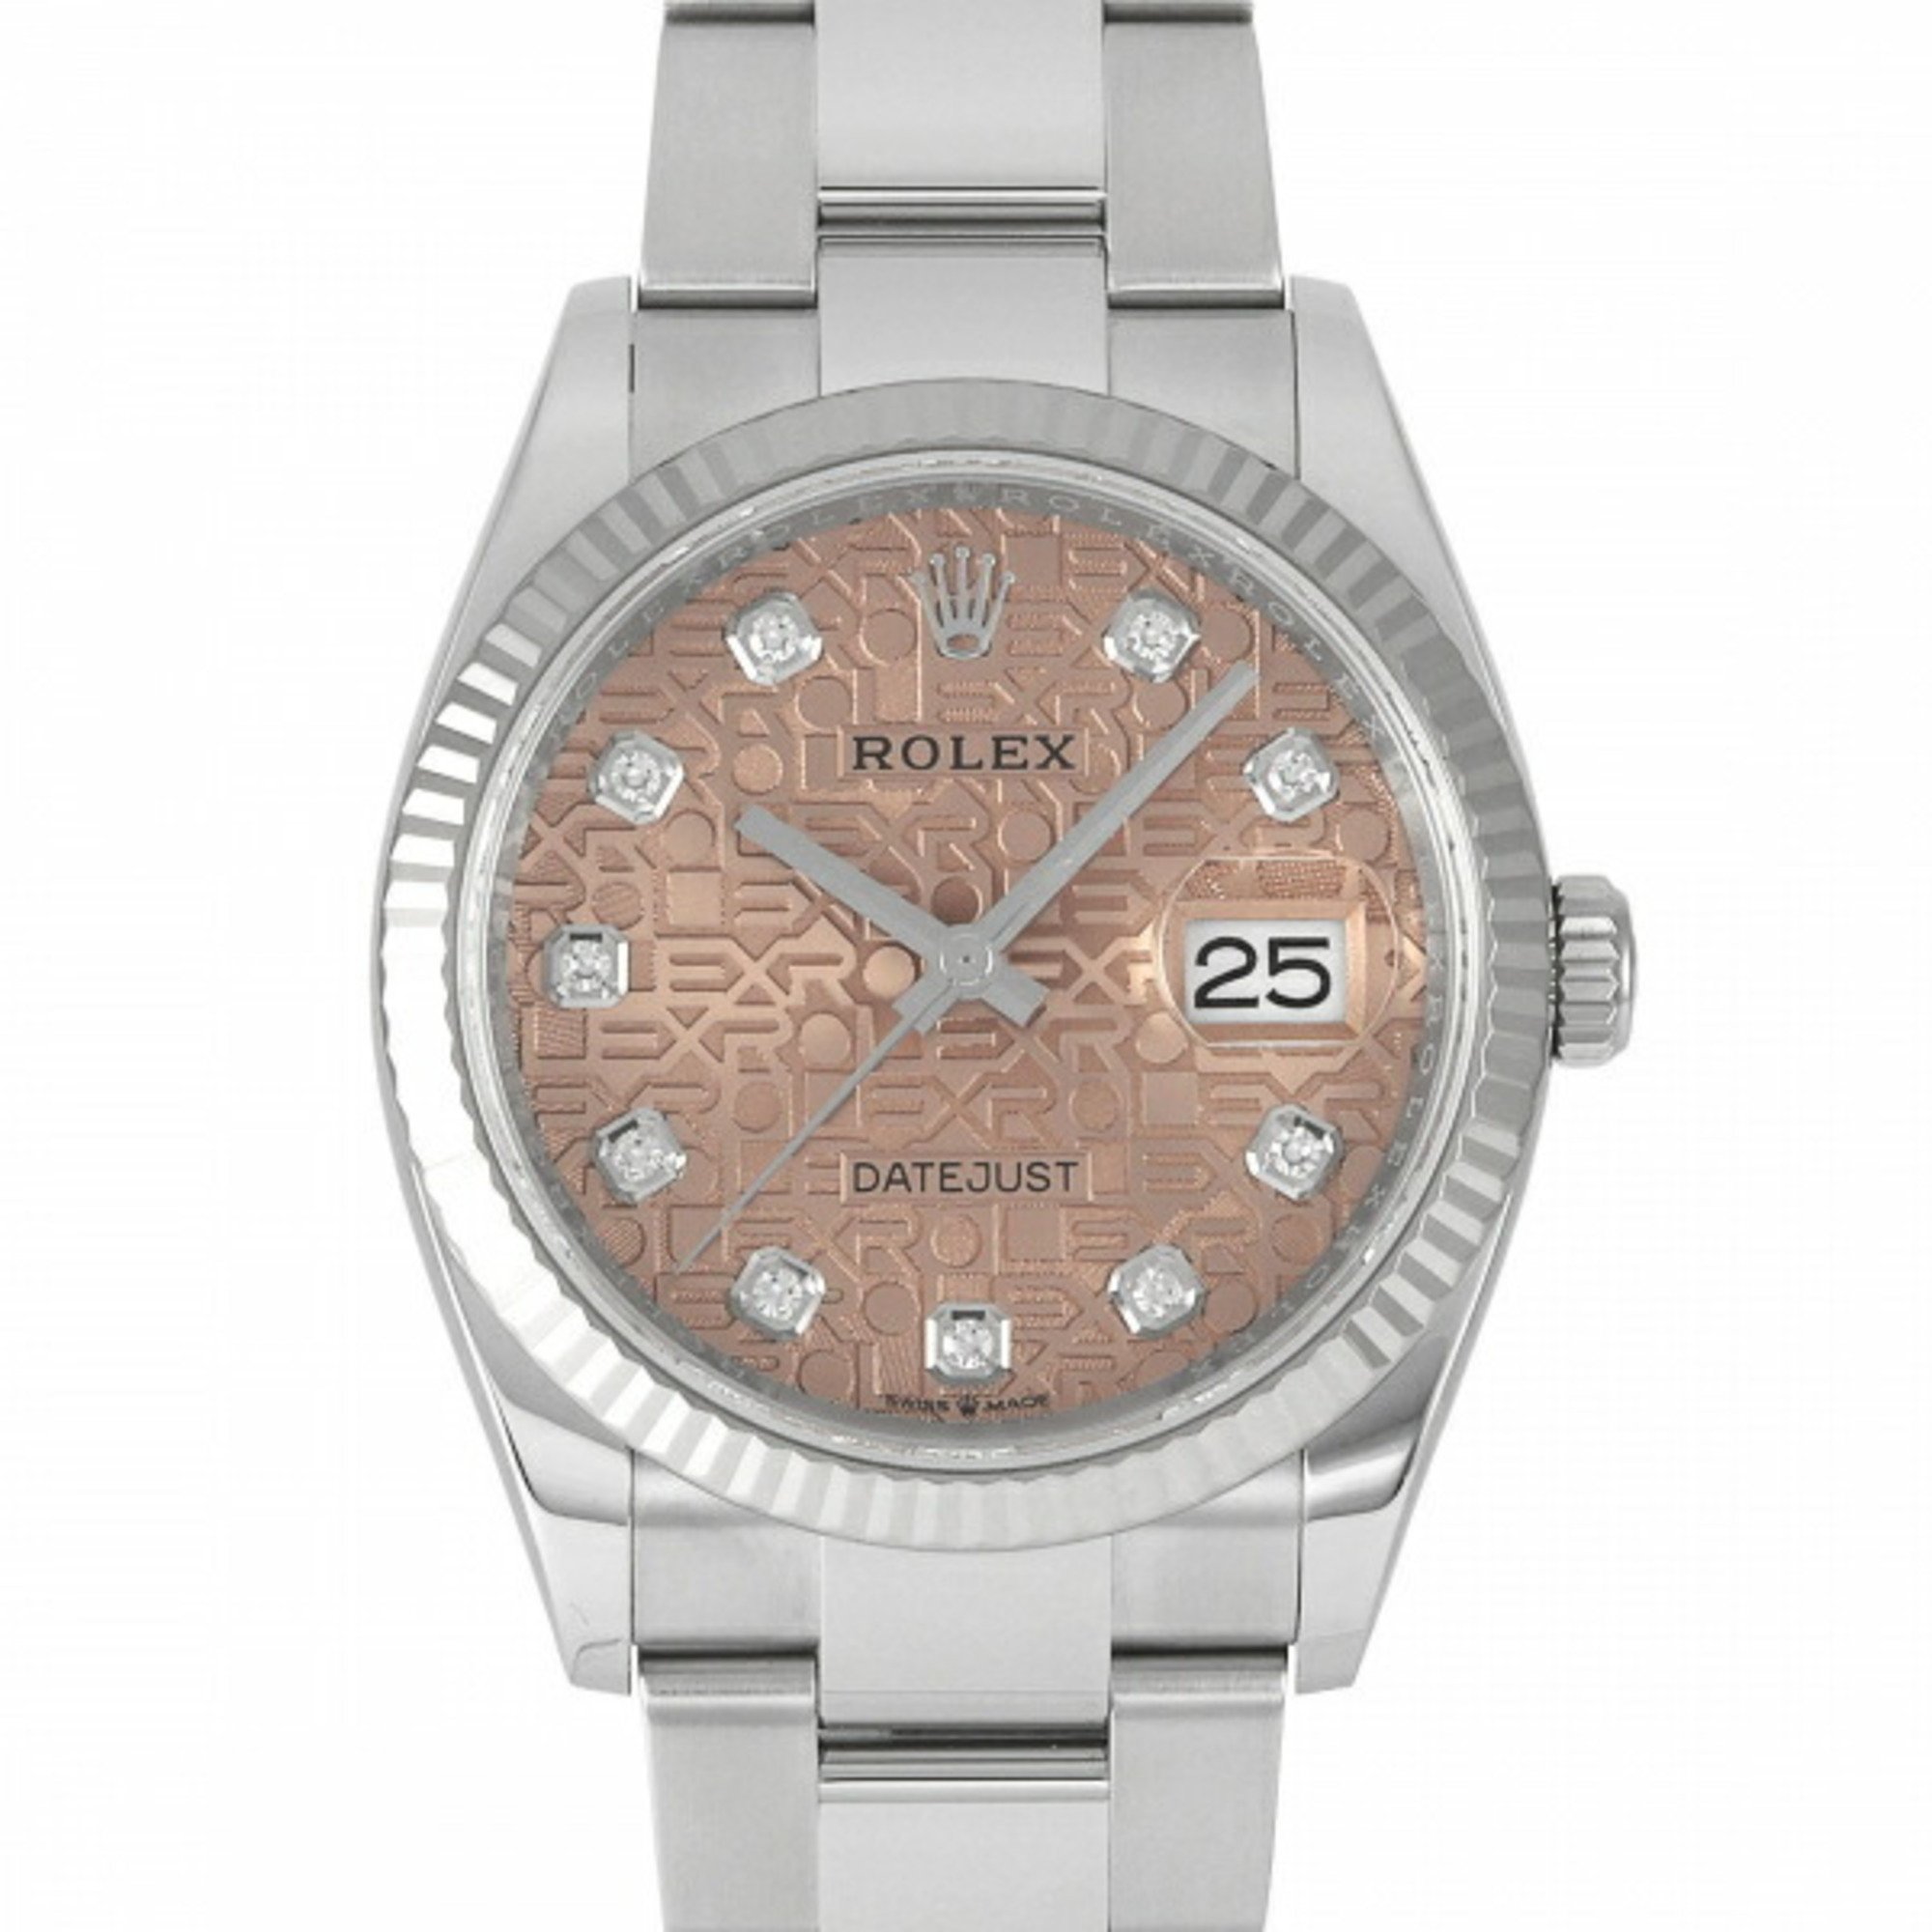 Rolex ROLEX Datejust 36 126234G pink dial watch men's